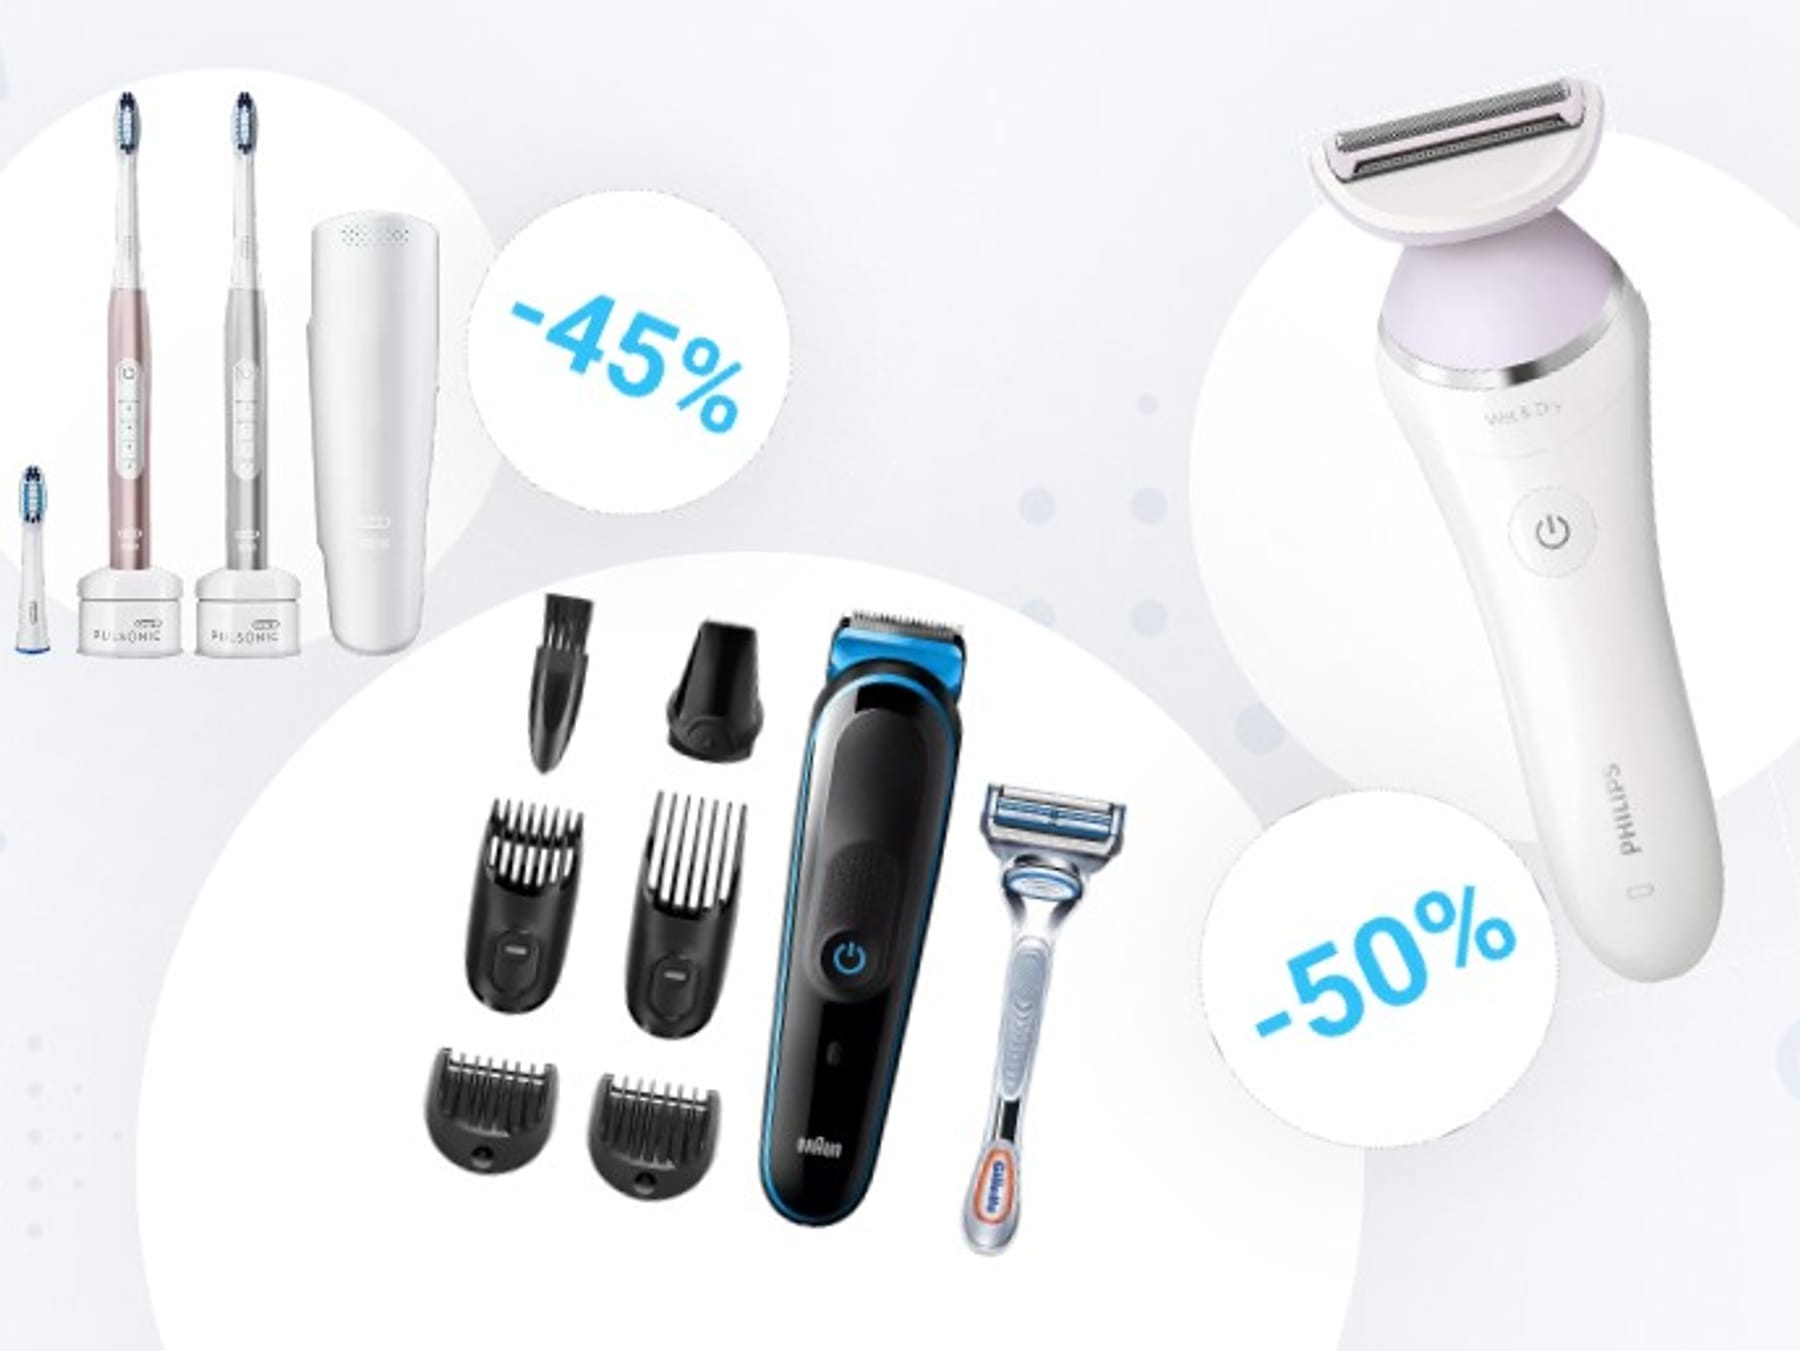 Amazon-Rasierer-Angebote: Multi-Grooming-Kit von Braun und Philips-Rasierer  zum Schnäppchenpreis